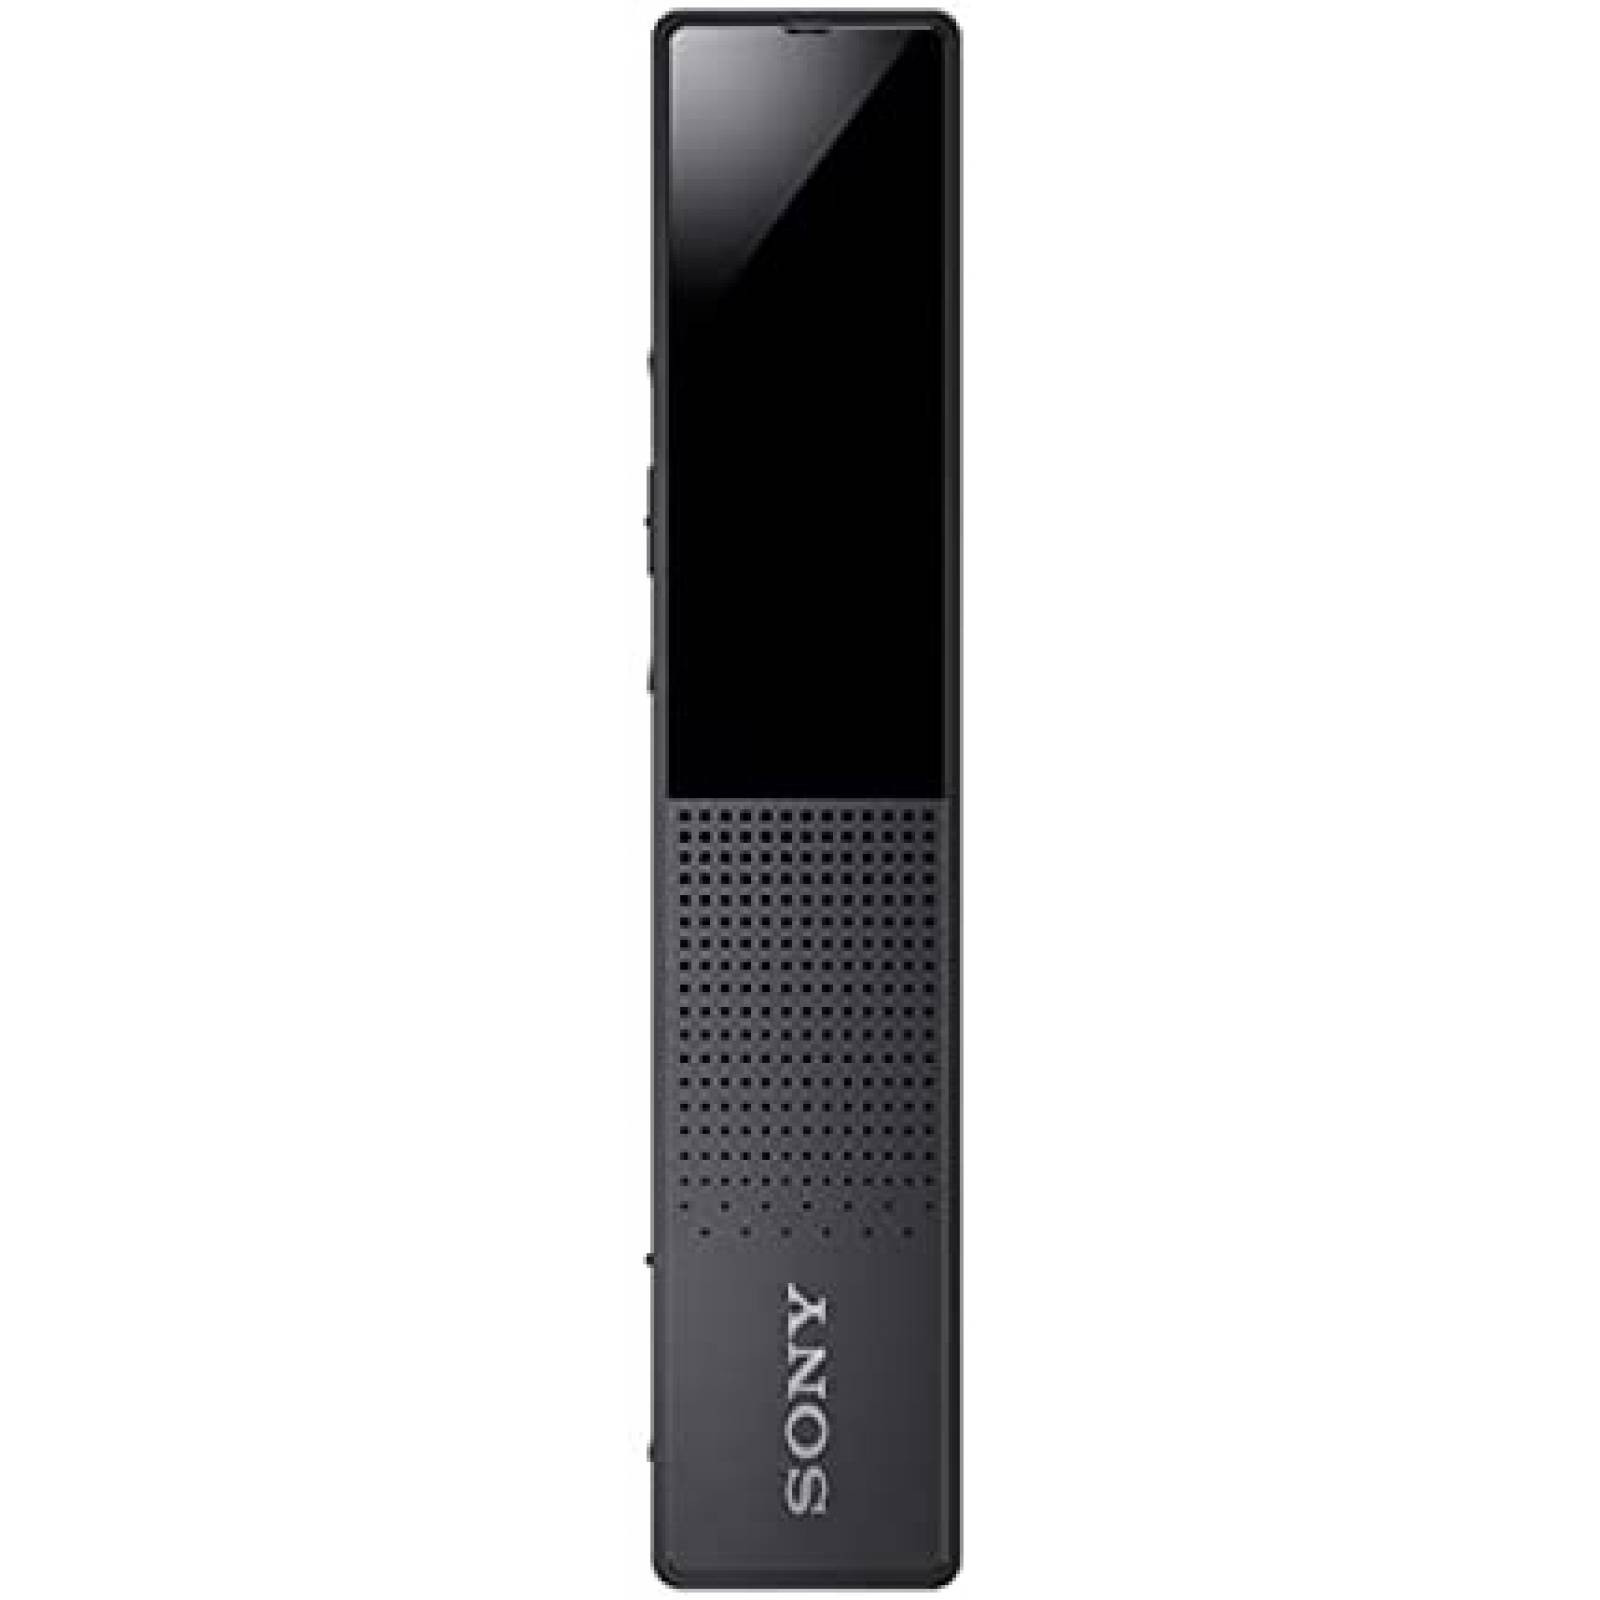 SONY ICD-TX660 Black / Grabadora de voz digital 16GB